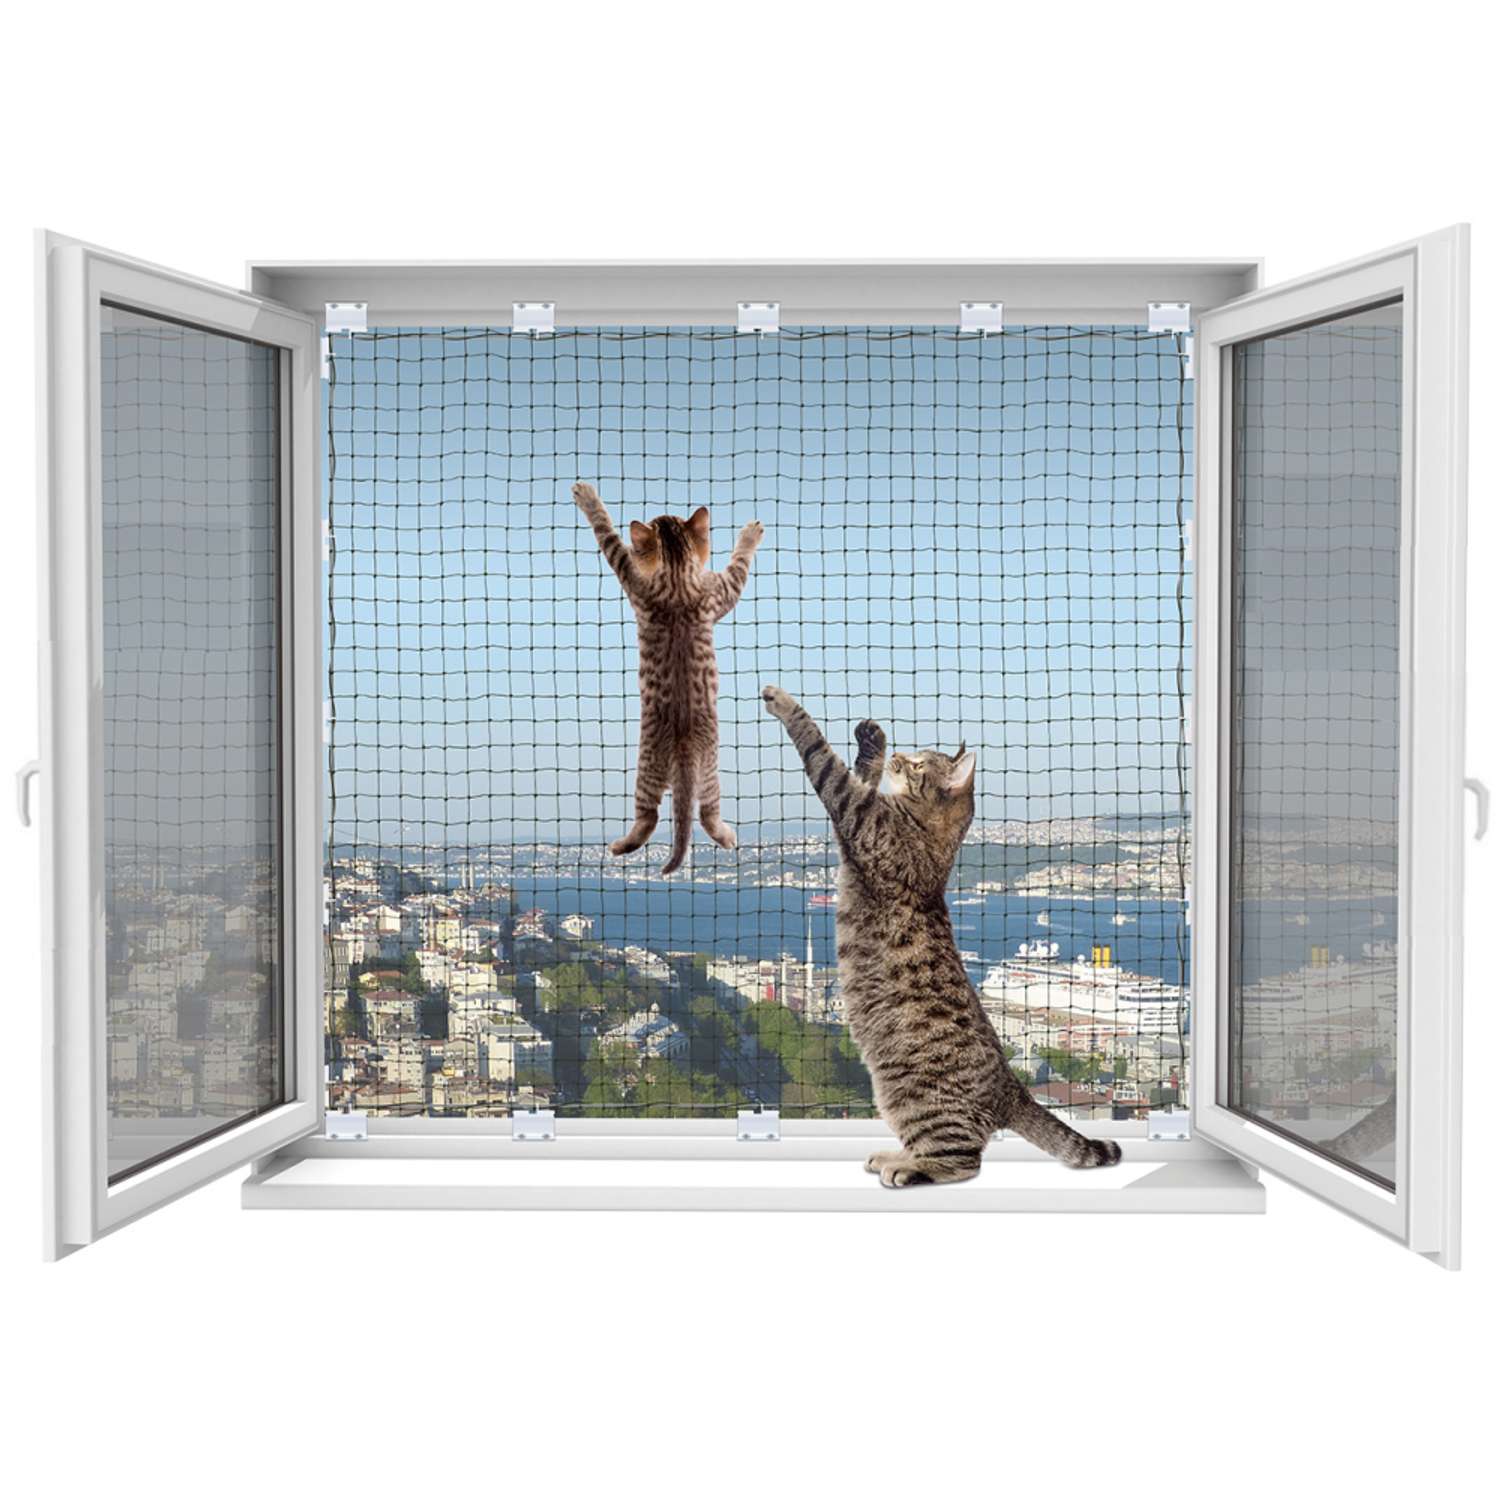 Защитная сетка WINBLOCK на окна для кошек Pets 80х140см белый кронштейн - фото 2